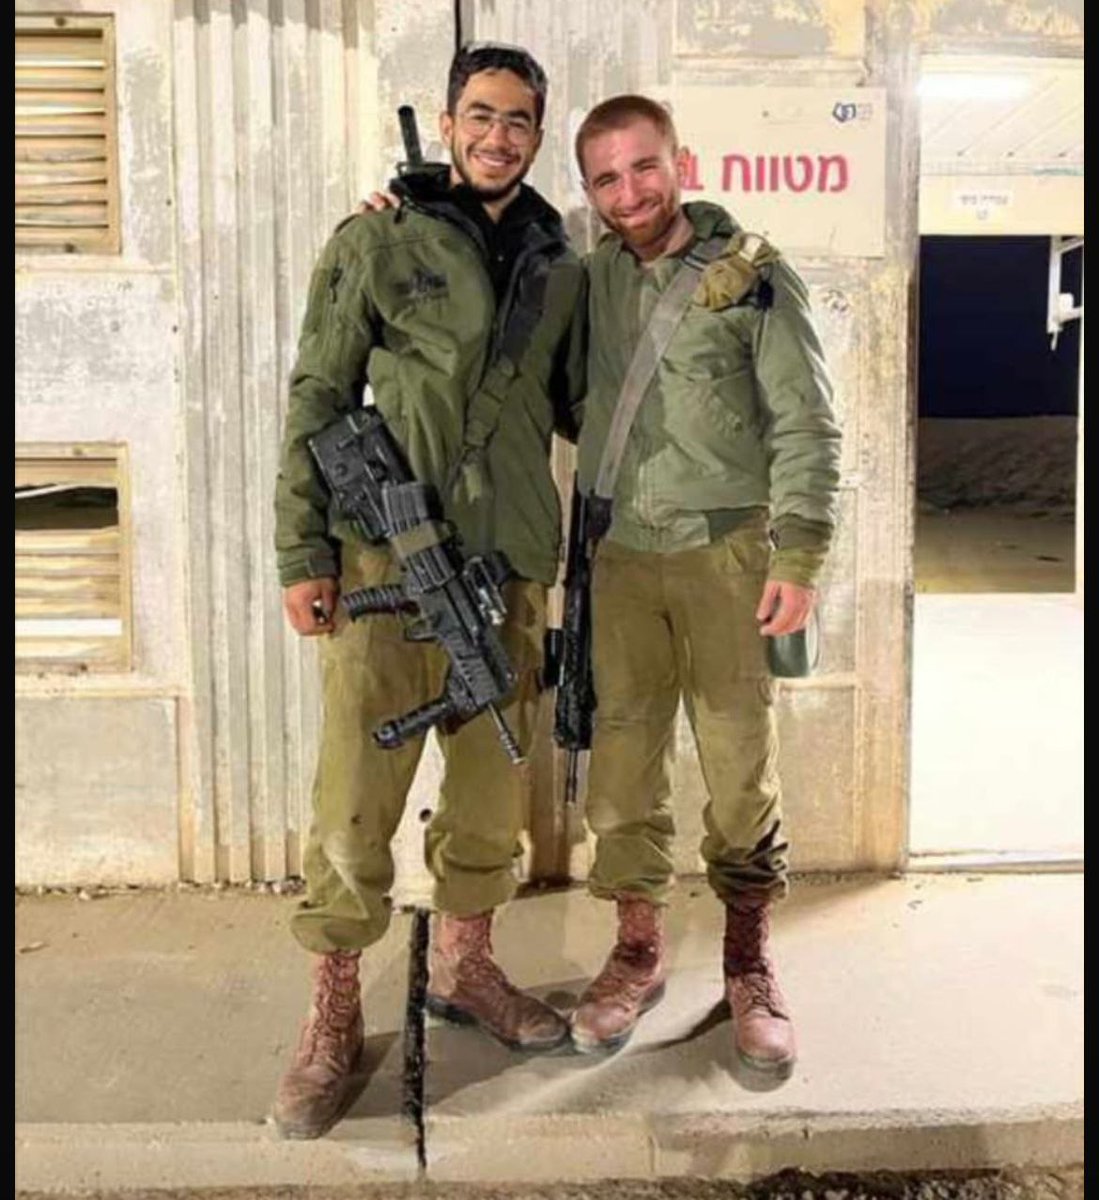 Çok yakın iki siyonist terörist arkadaş. Yedikleri içtikleri ayrı gitmezmiş.

Soldaki 4 ay önce gebertilmişti, diğeri de dün onun yanına cehenneme gönderildi.

Kişi sevdiği ile beraberdir. Sevdiklerinize dikkat edin.

#GazaGenocides 
#RafahMasacre